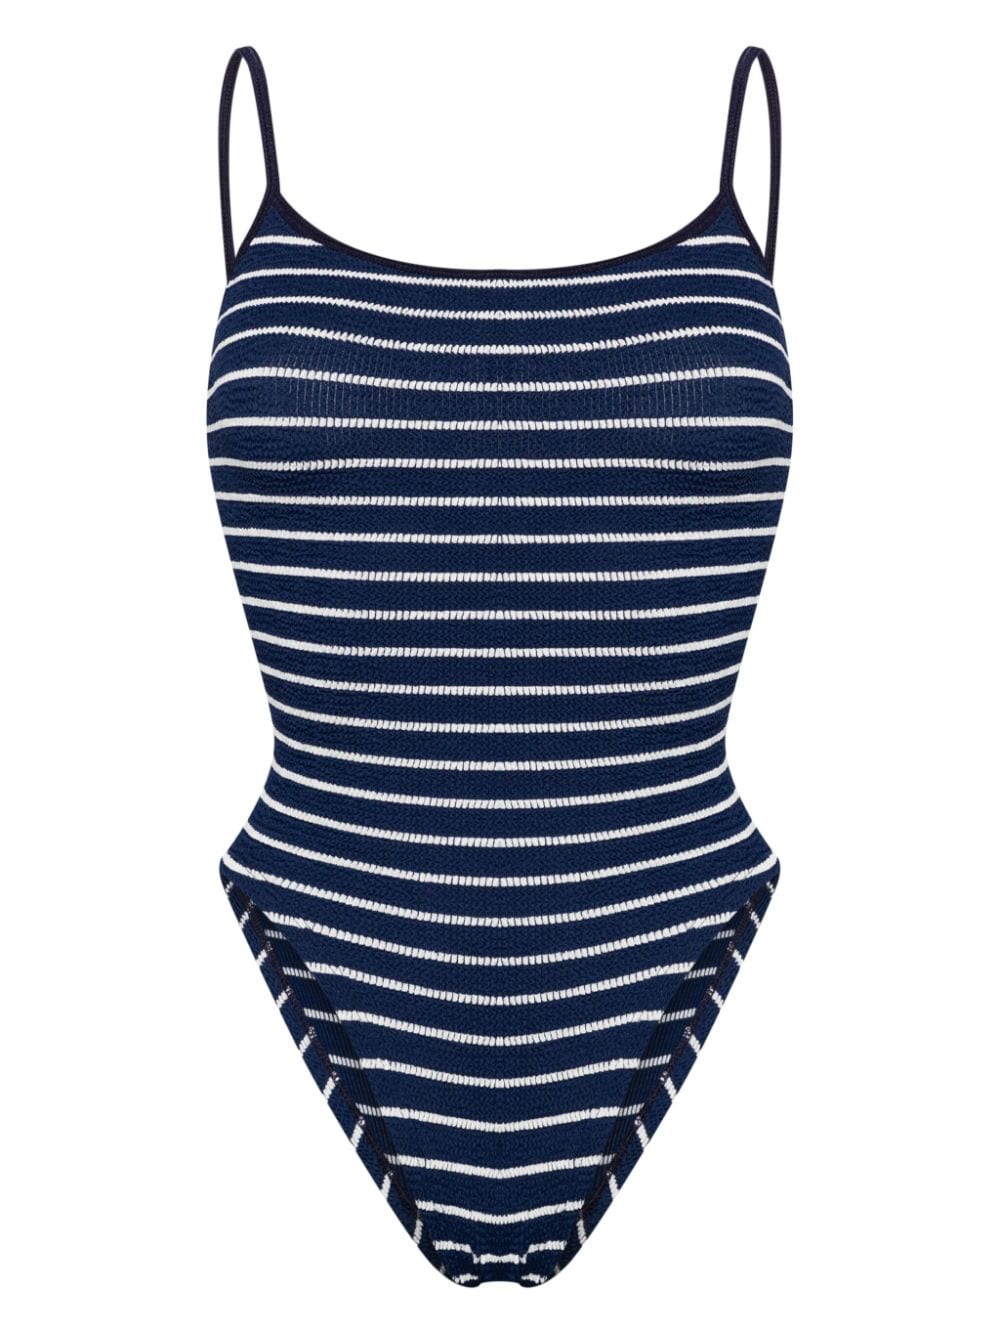 Pamela striped swimsuit